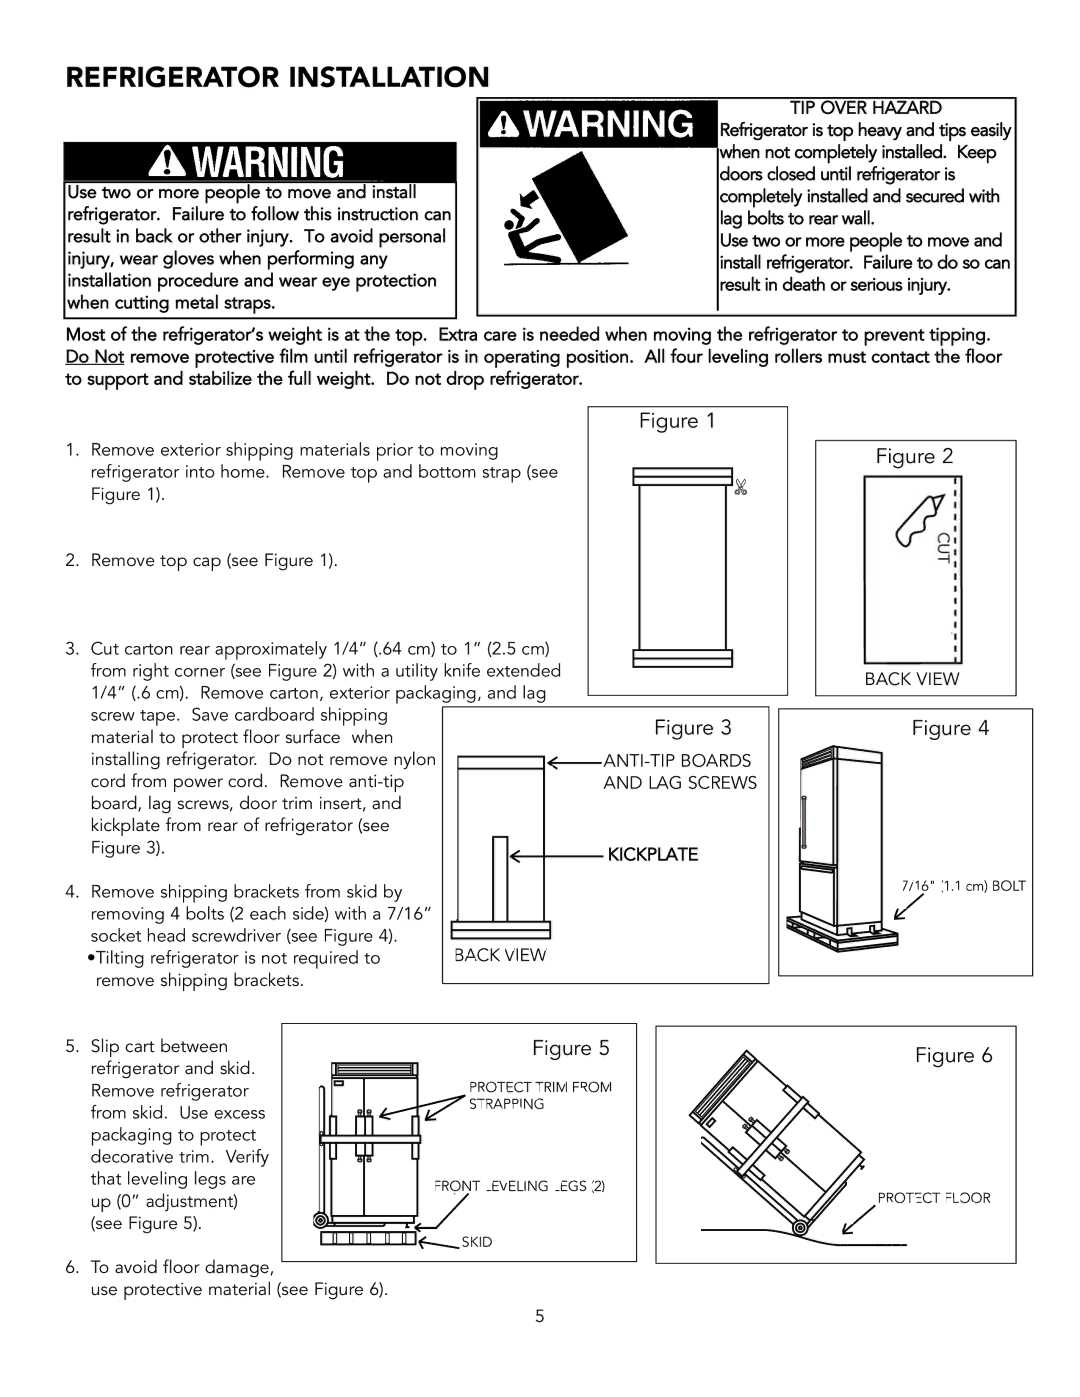 Viking BRTGK72SS installation instructions Refrigerator Installation, ANTI- TIP Boards, LAG Screws, Kickplate, Back View 